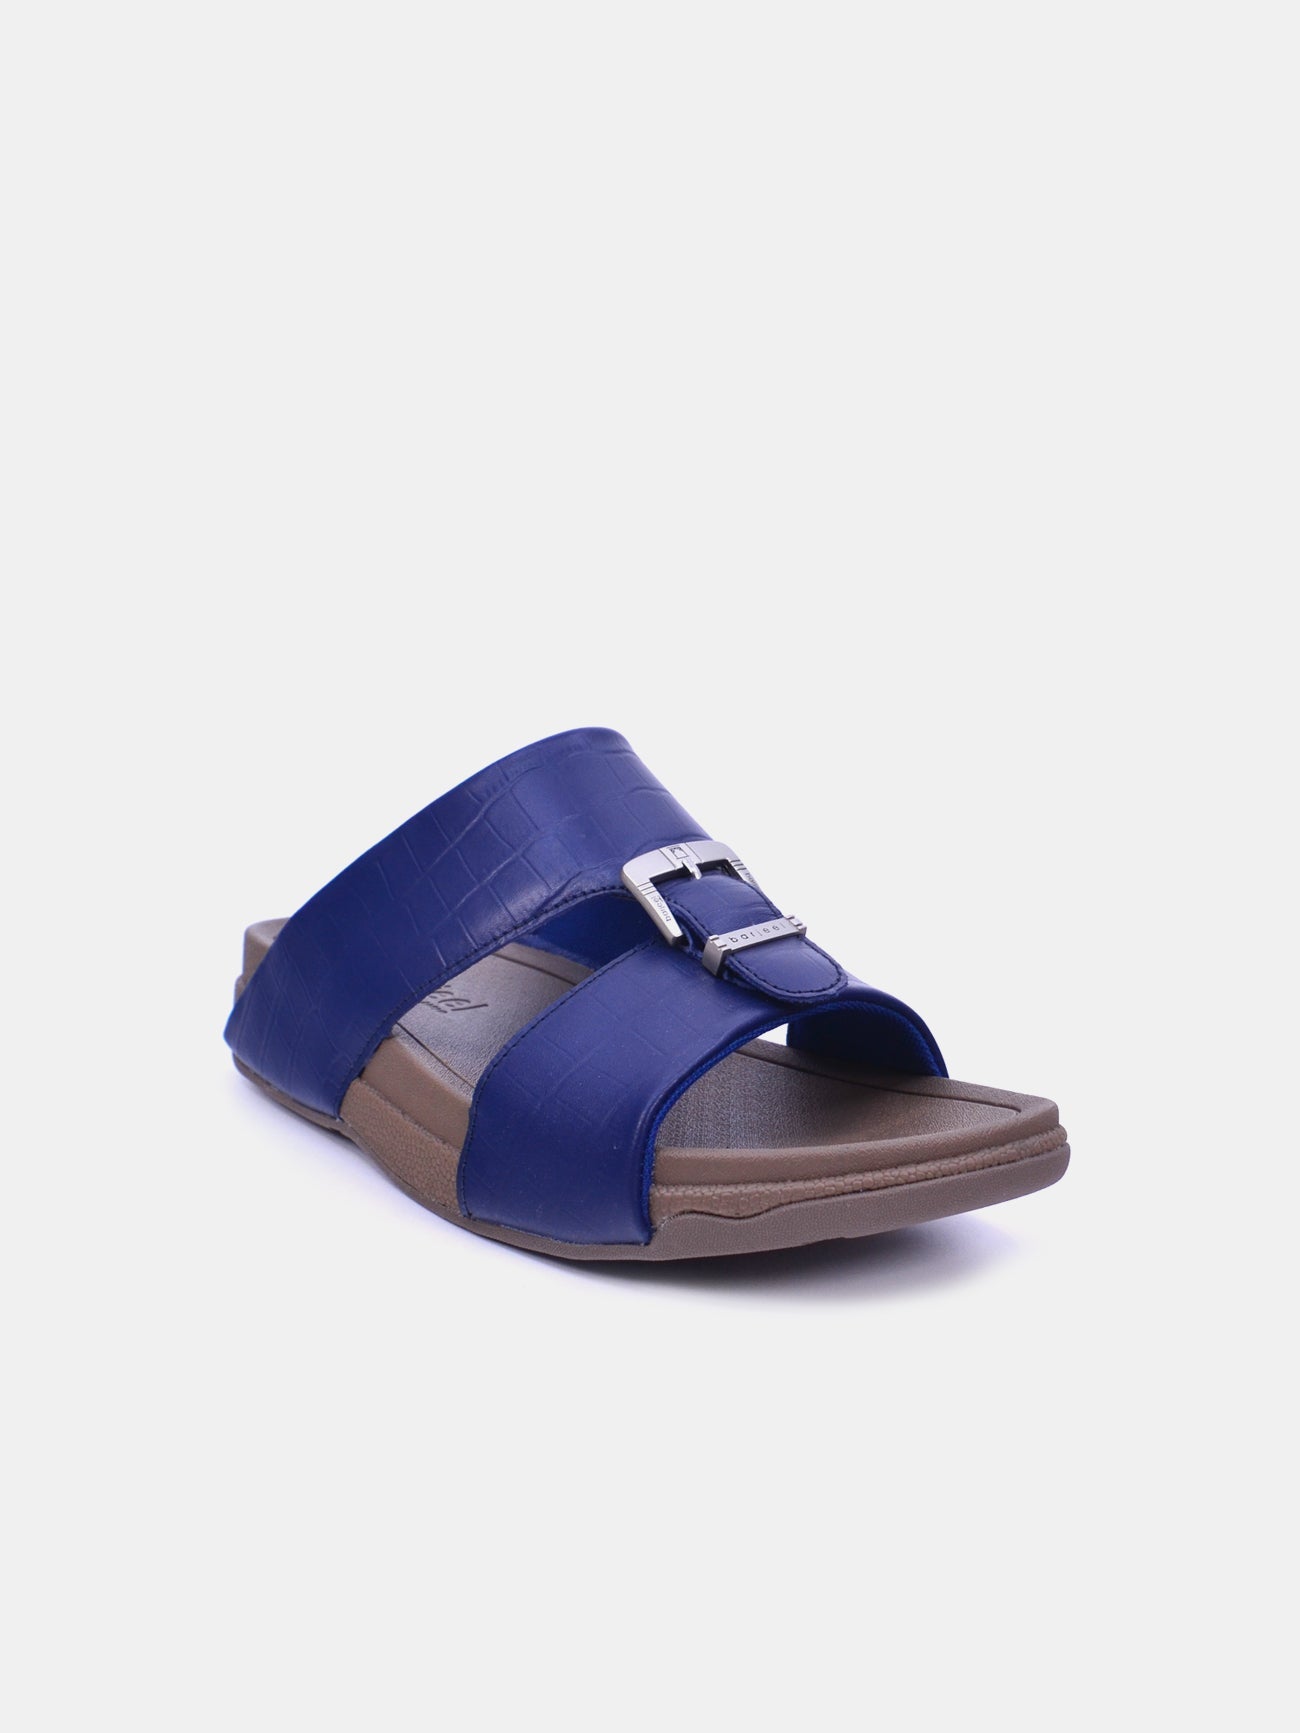 Barjeel Uno 20295 Men's Arabic Sandals #color_Blue